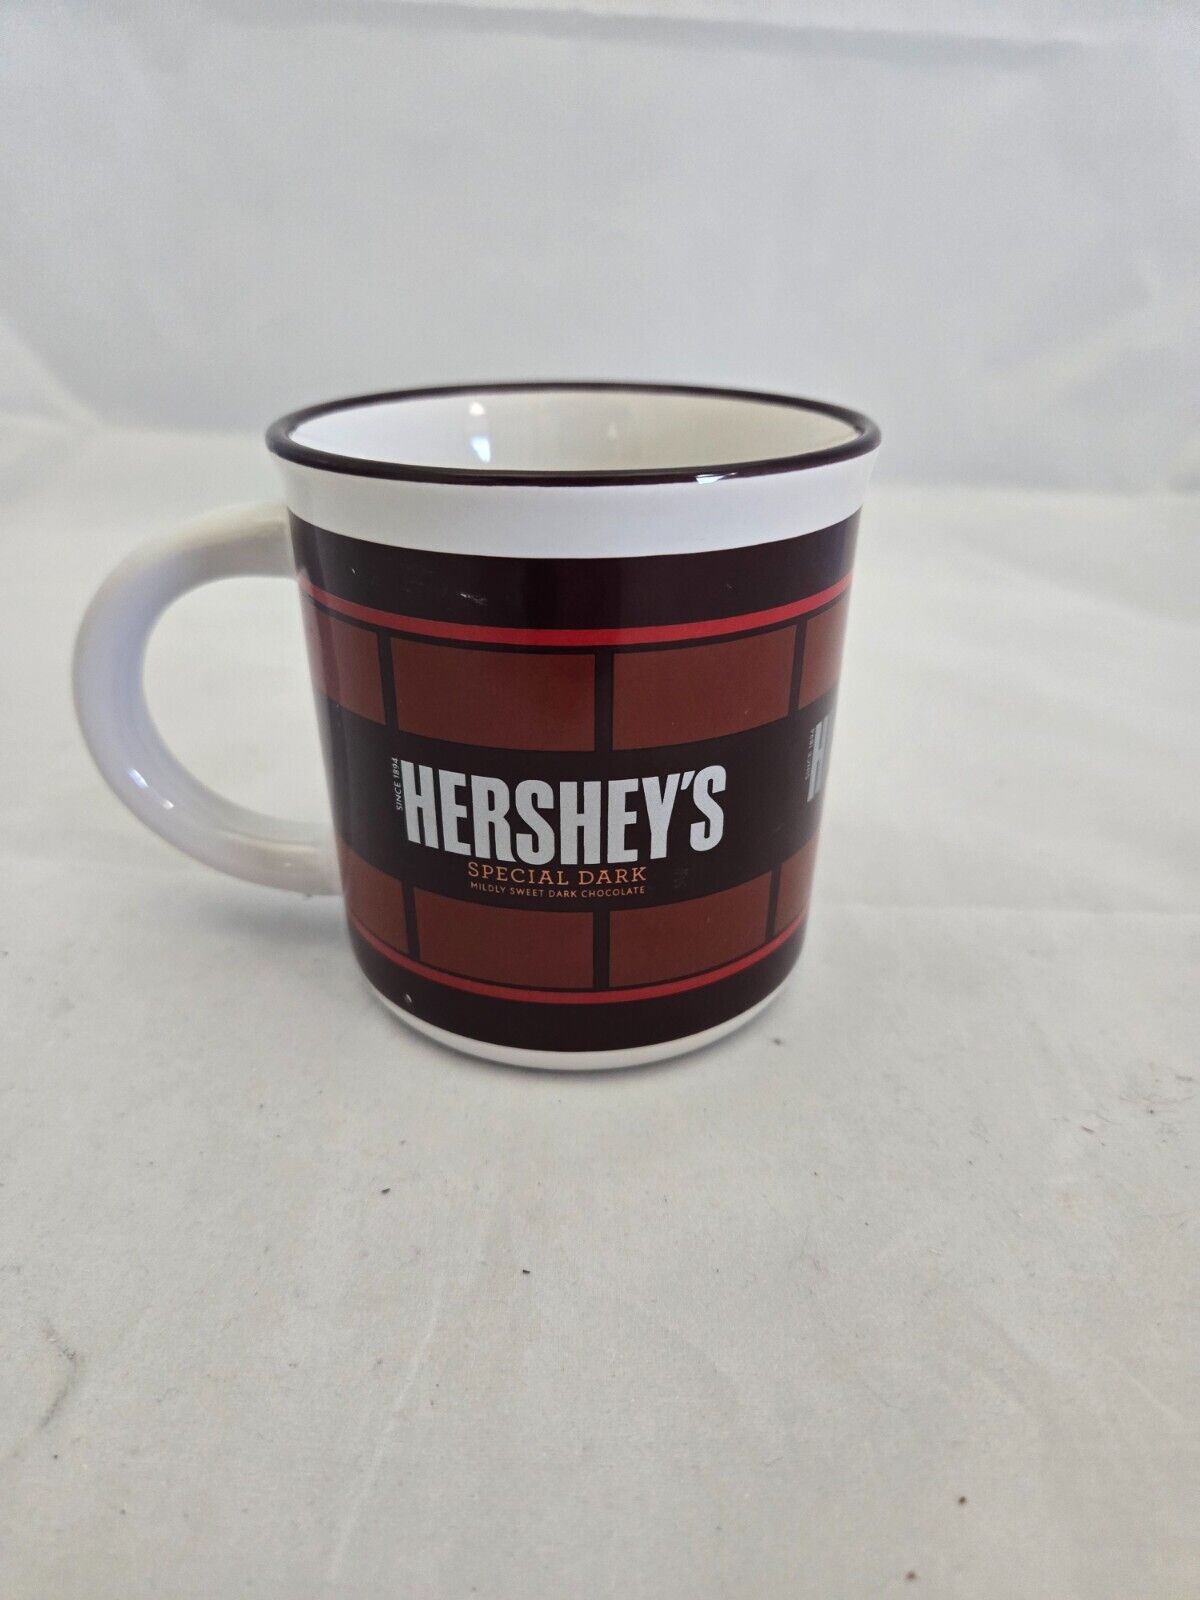 Vintage Hershey’s Special Dark Chocolate Mug Tea/Coffee Cup